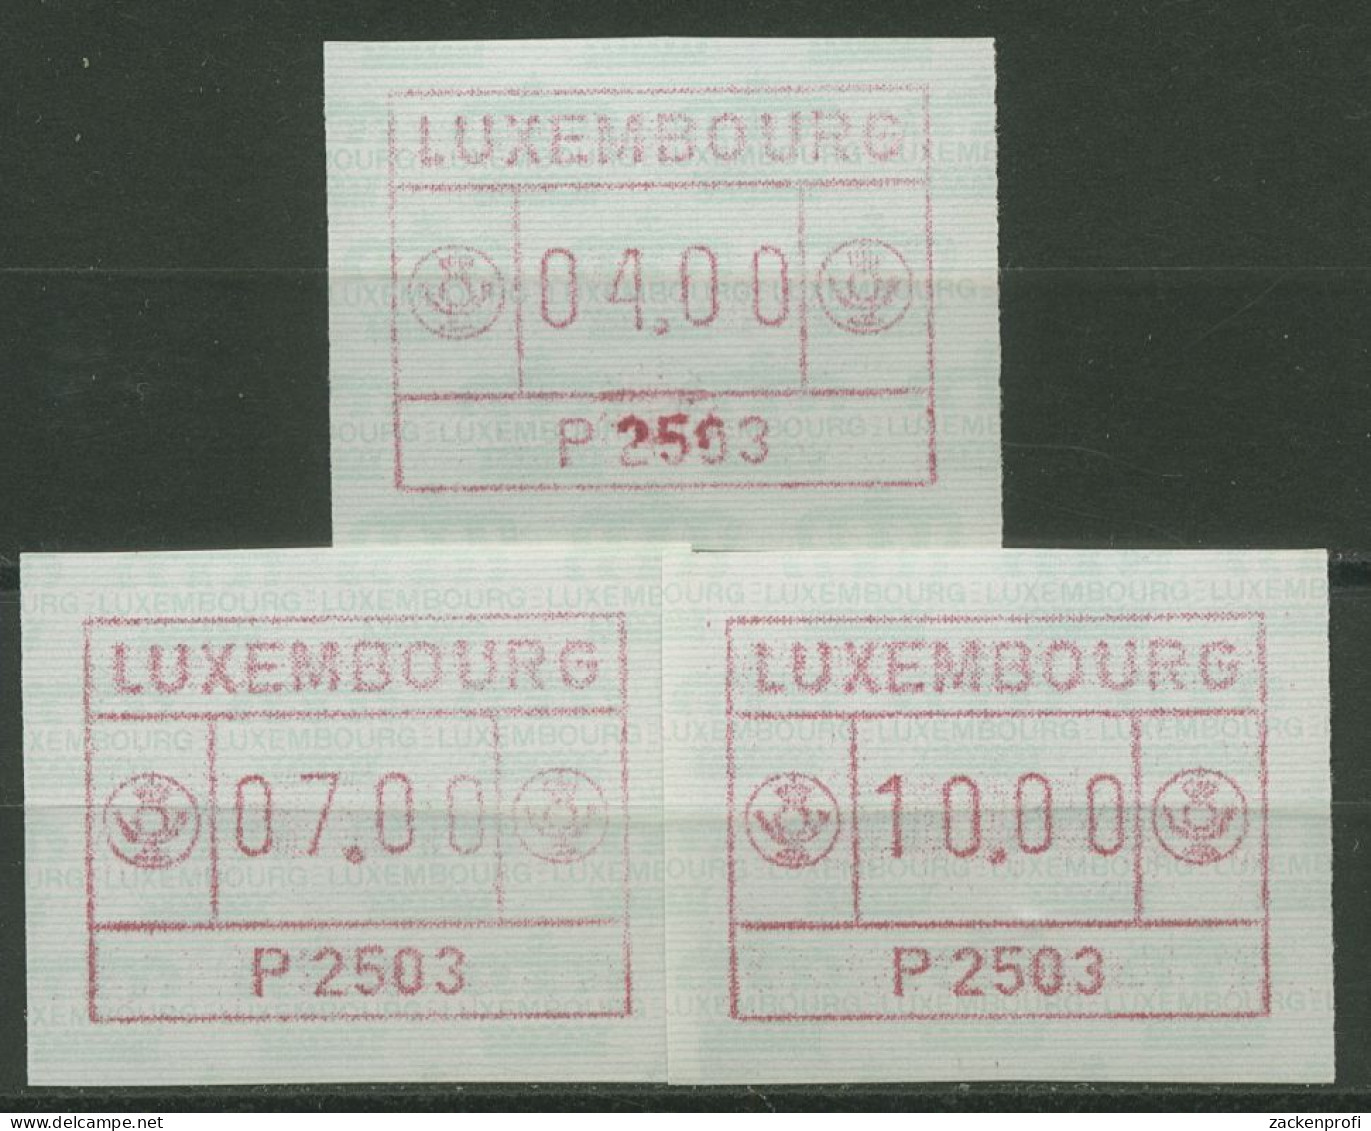 Luxemburg 1983 Automatenmarke Automat P 2503 Satz 1.3 B S1 Postfrisch - Frankeervignetten